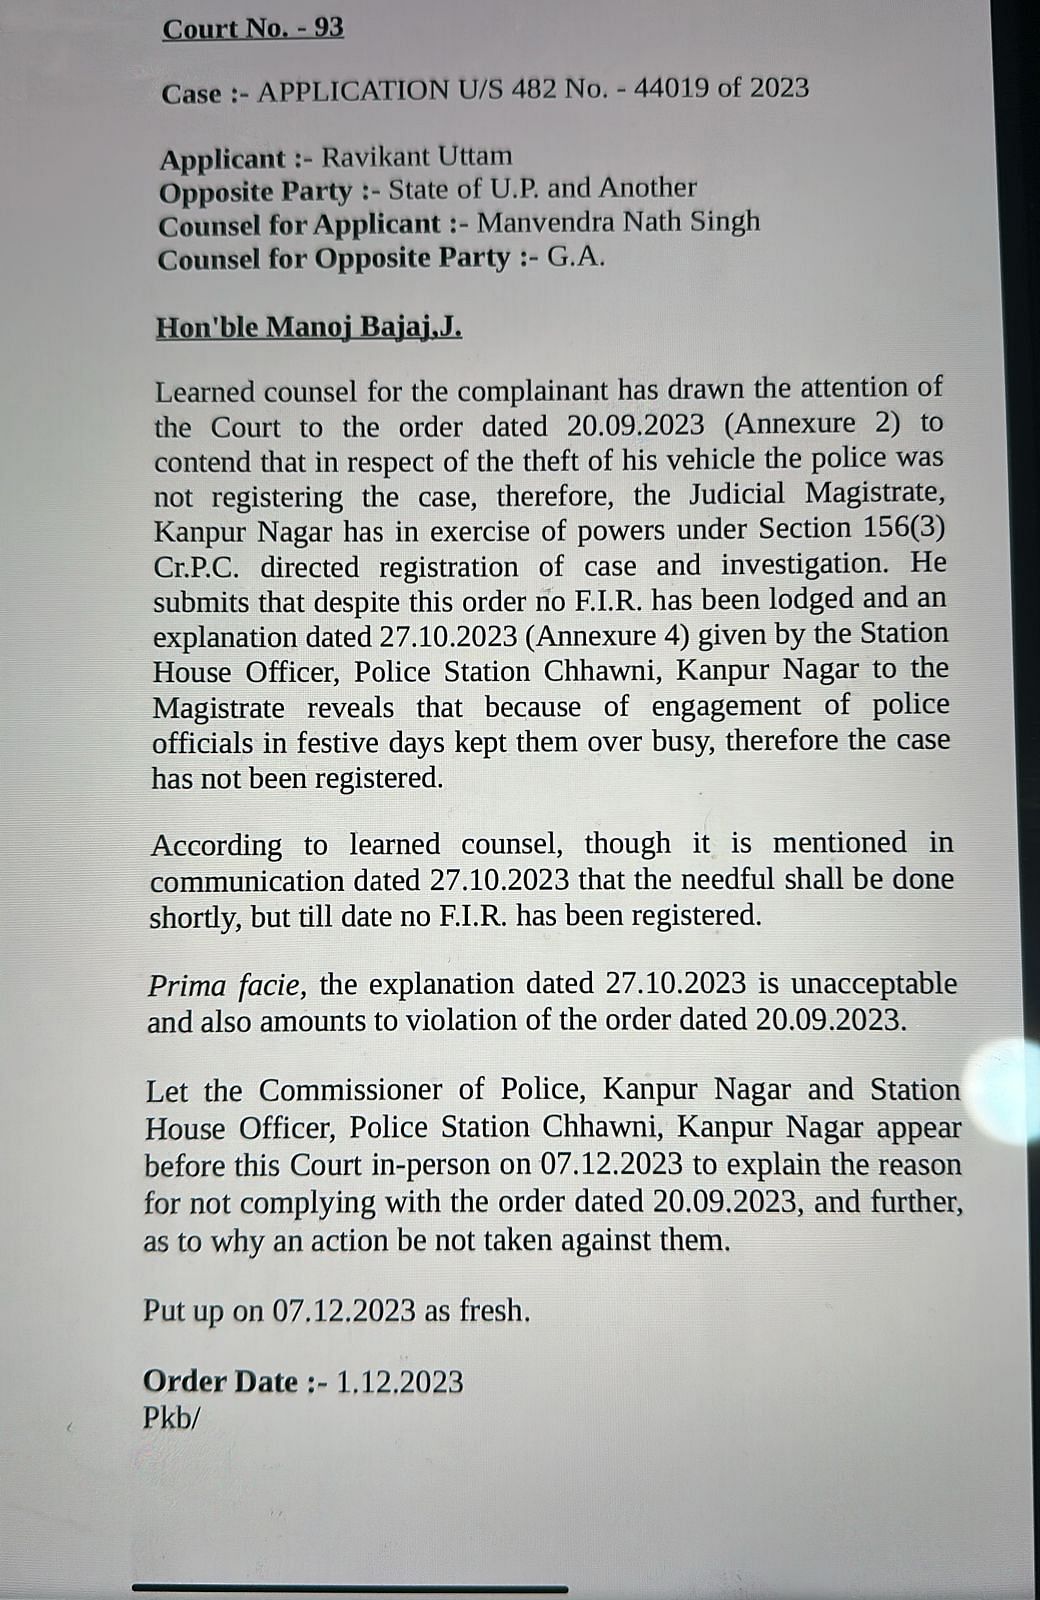 Kanpur: दो सितंबर 2023 को अदालत ने कार चोरी के मामले में कैंट इंस्पेक्टर को रिपोर्ट लिखकर जांच करने का निर्देश दिया था.